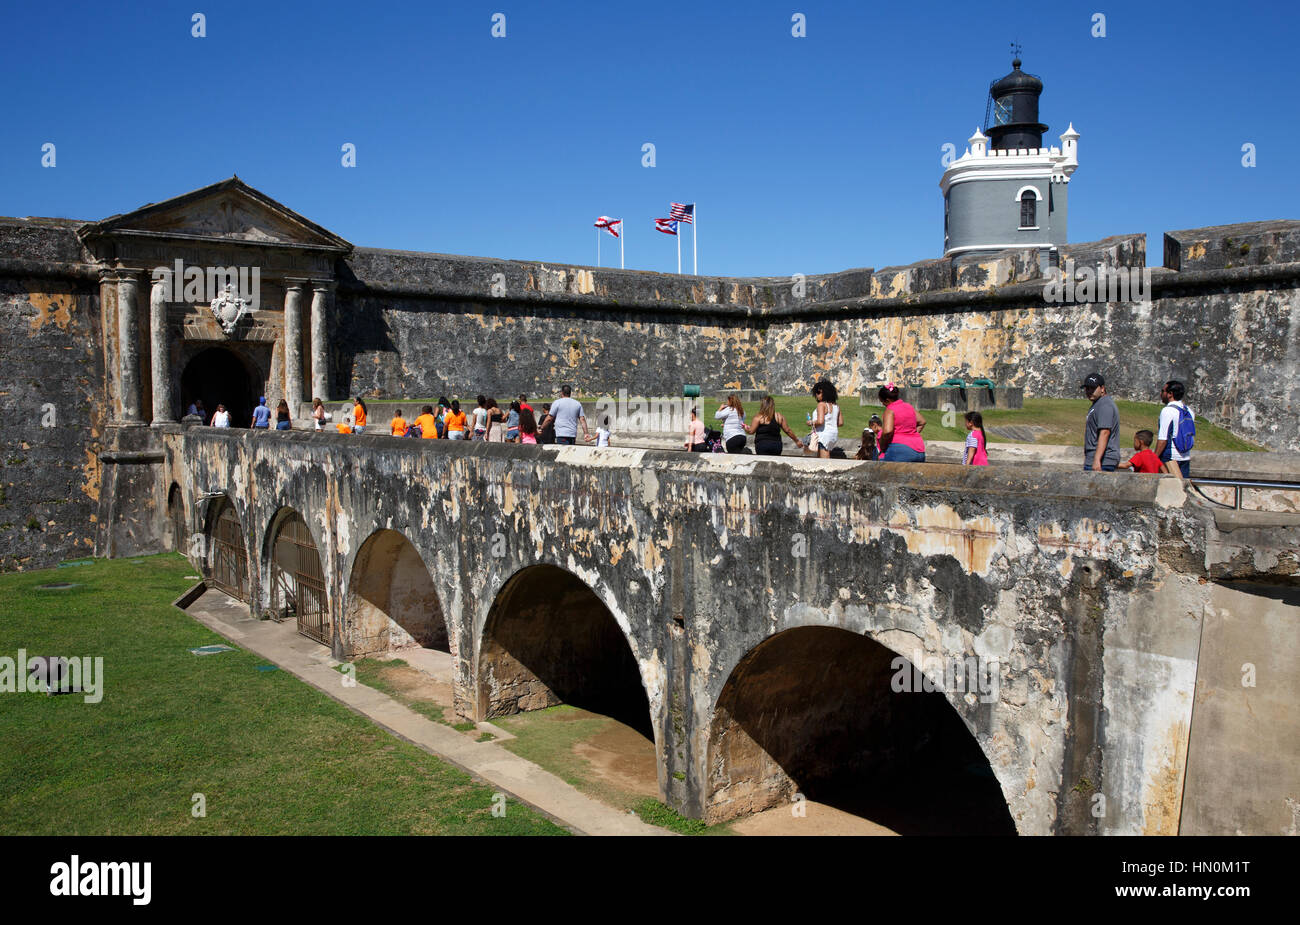 Menschen überqueren Sie eine Brücke zum Eingang des historischen San Felipe del Morro Festung in San Juan, Puerto Rico Stockfoto